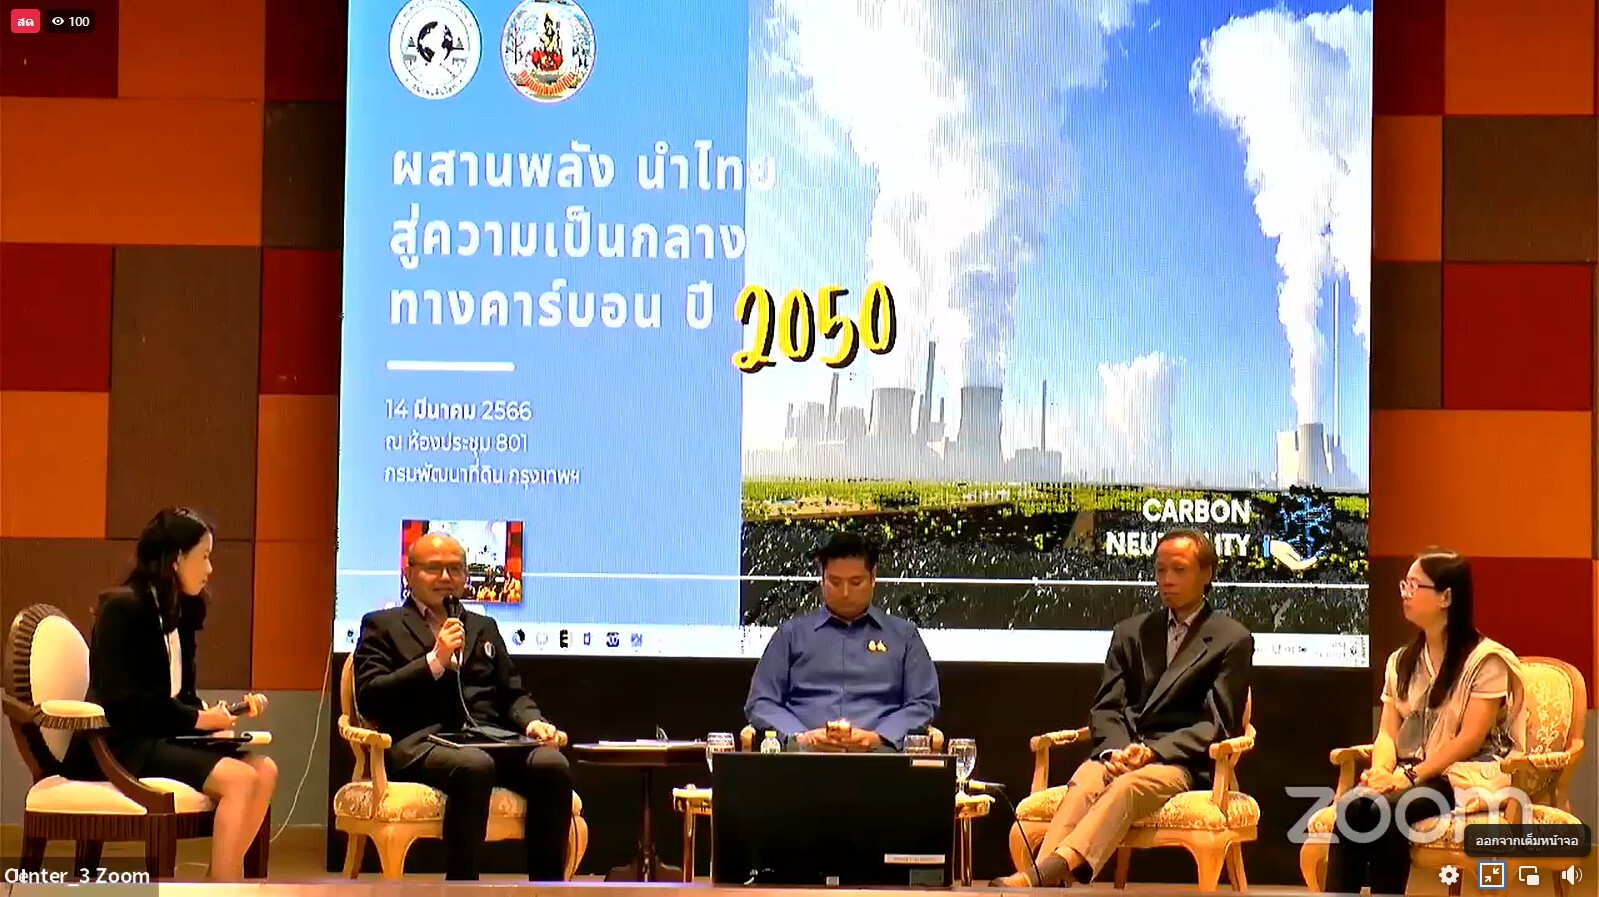 วว.ร่วมเสวนา เรื่อง "ผสานพลัง นำไทยสู่ความเป็นกลางทางคาร์บอน ปี 2050"